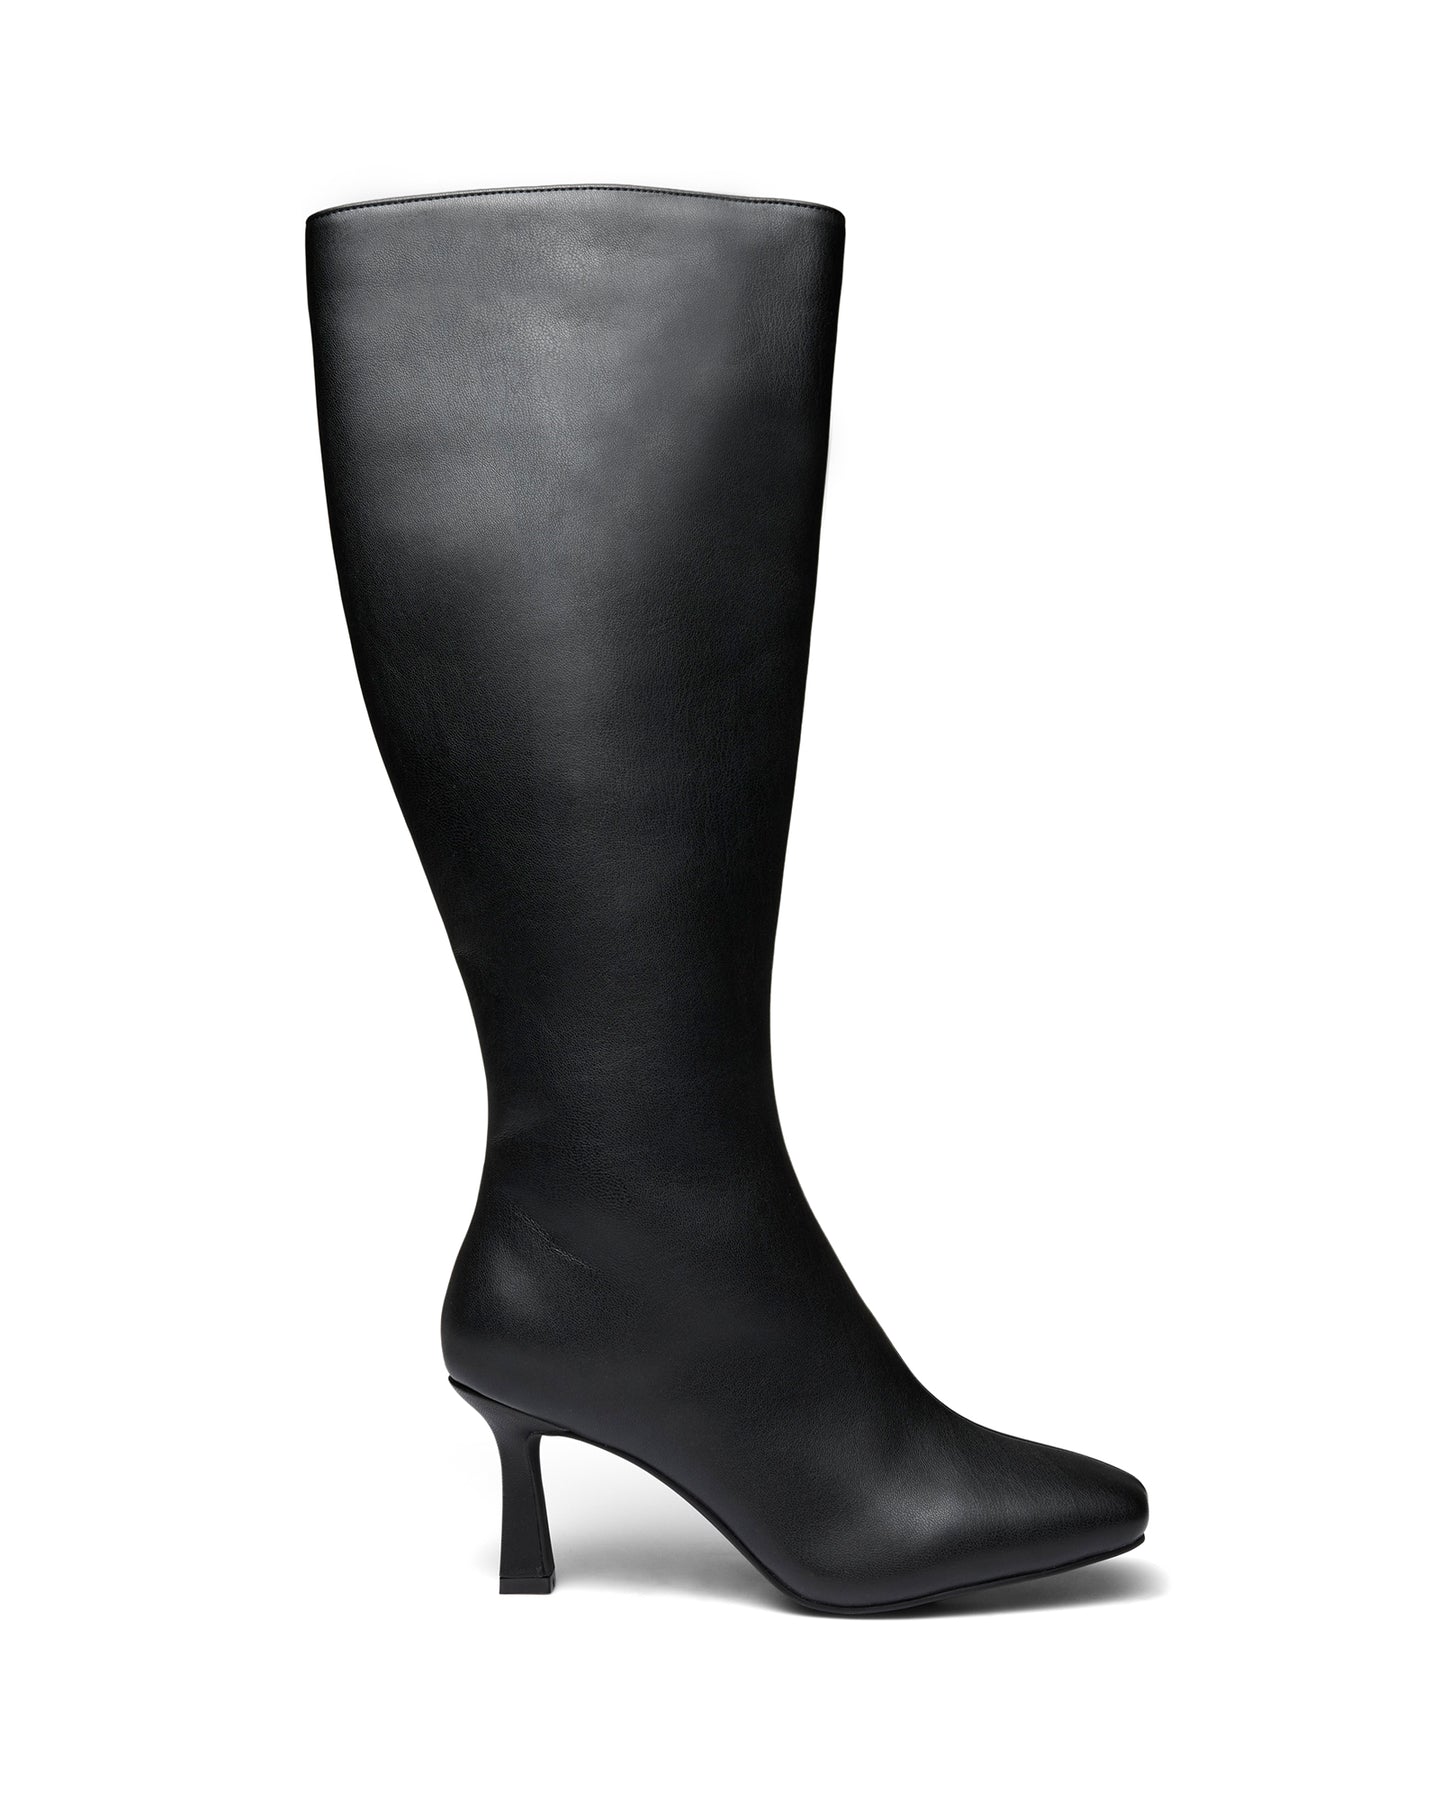 Black Patent Block Heel Knee High Boots | New Look